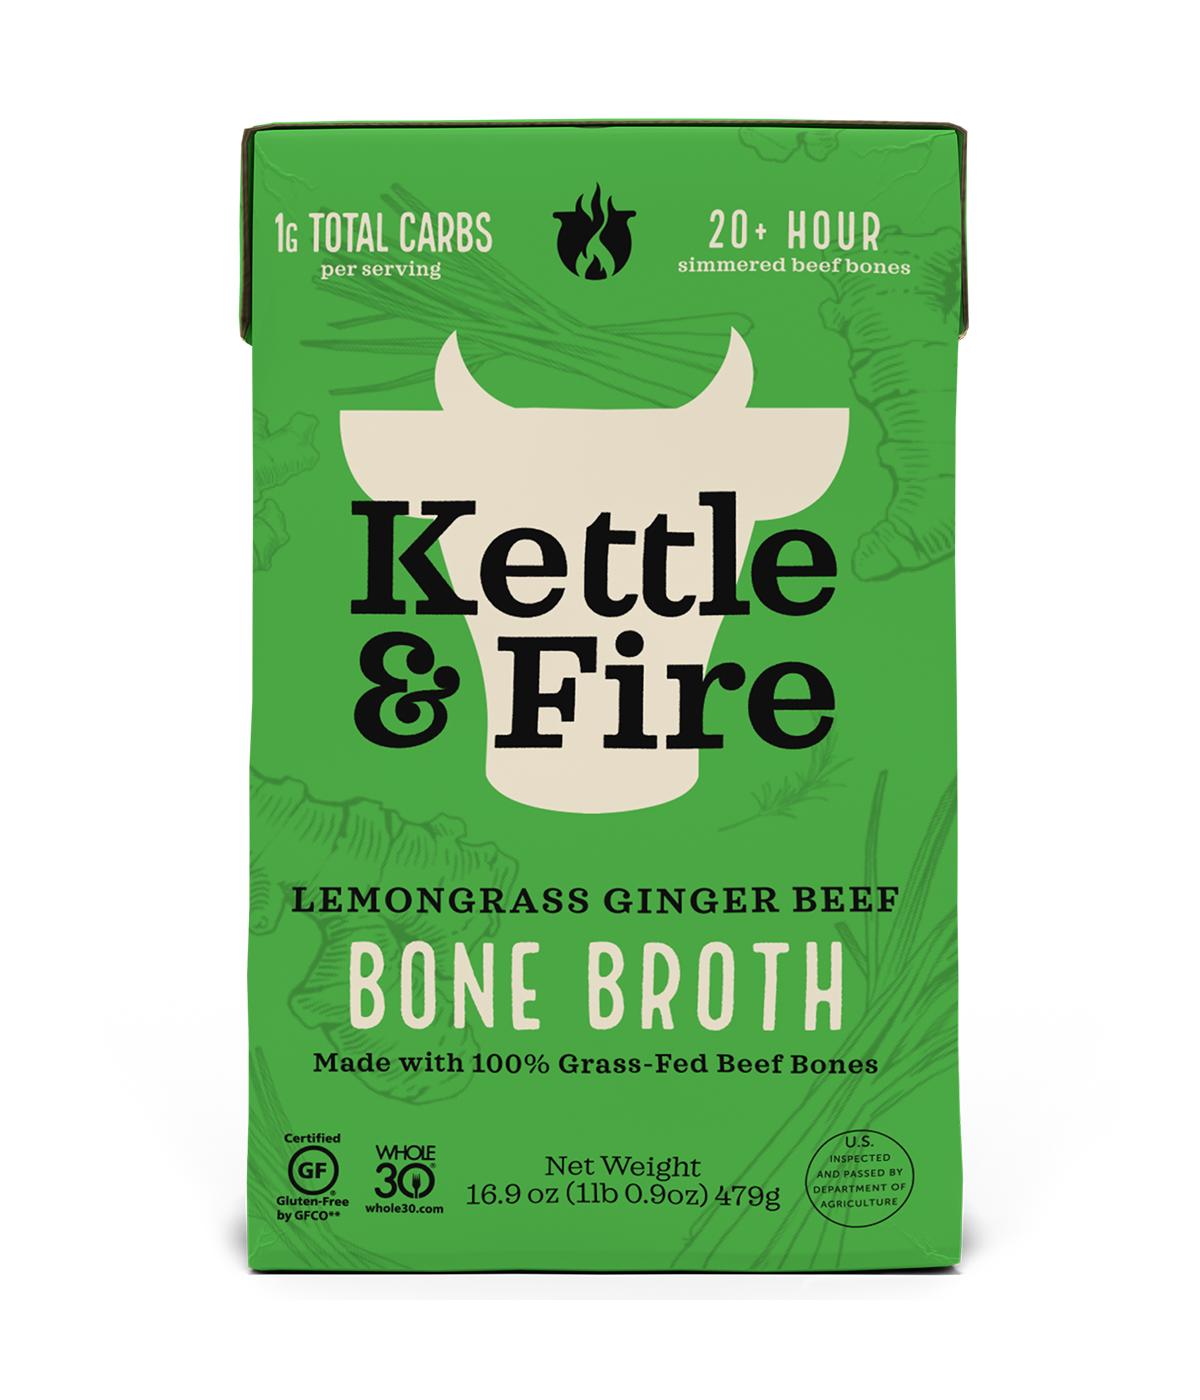 Kettle & Fire Lemongrass Ginger Beef Bone Broth; image 1 of 2